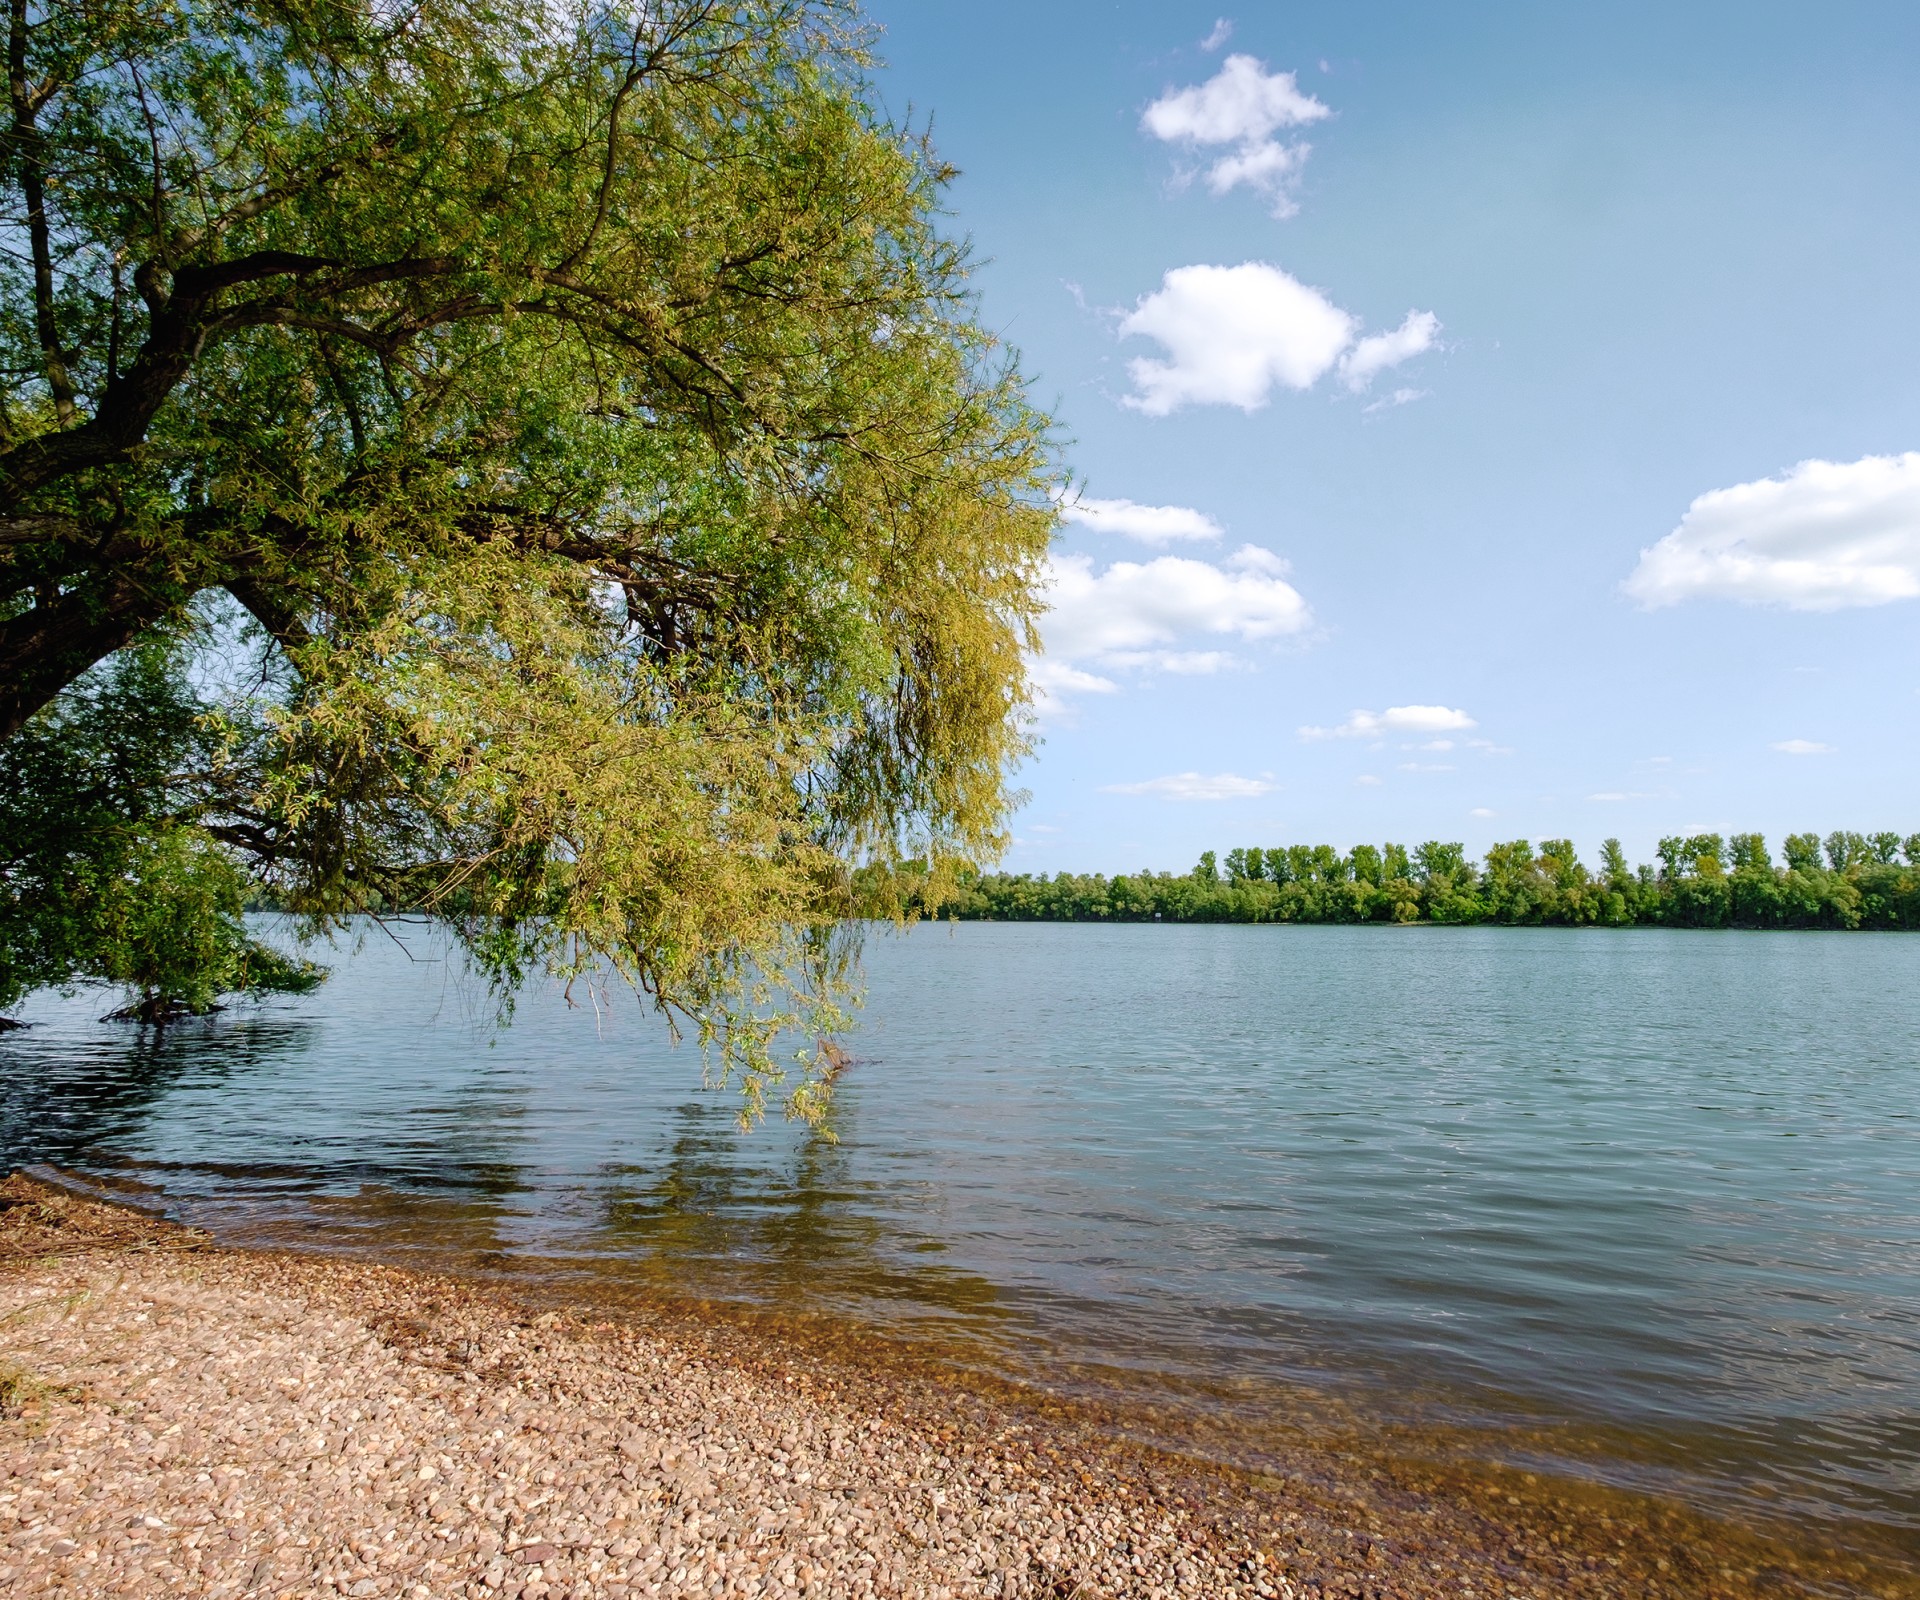 Un arbre au bord d'un lac avec une vue sur l'autre côté de la rive